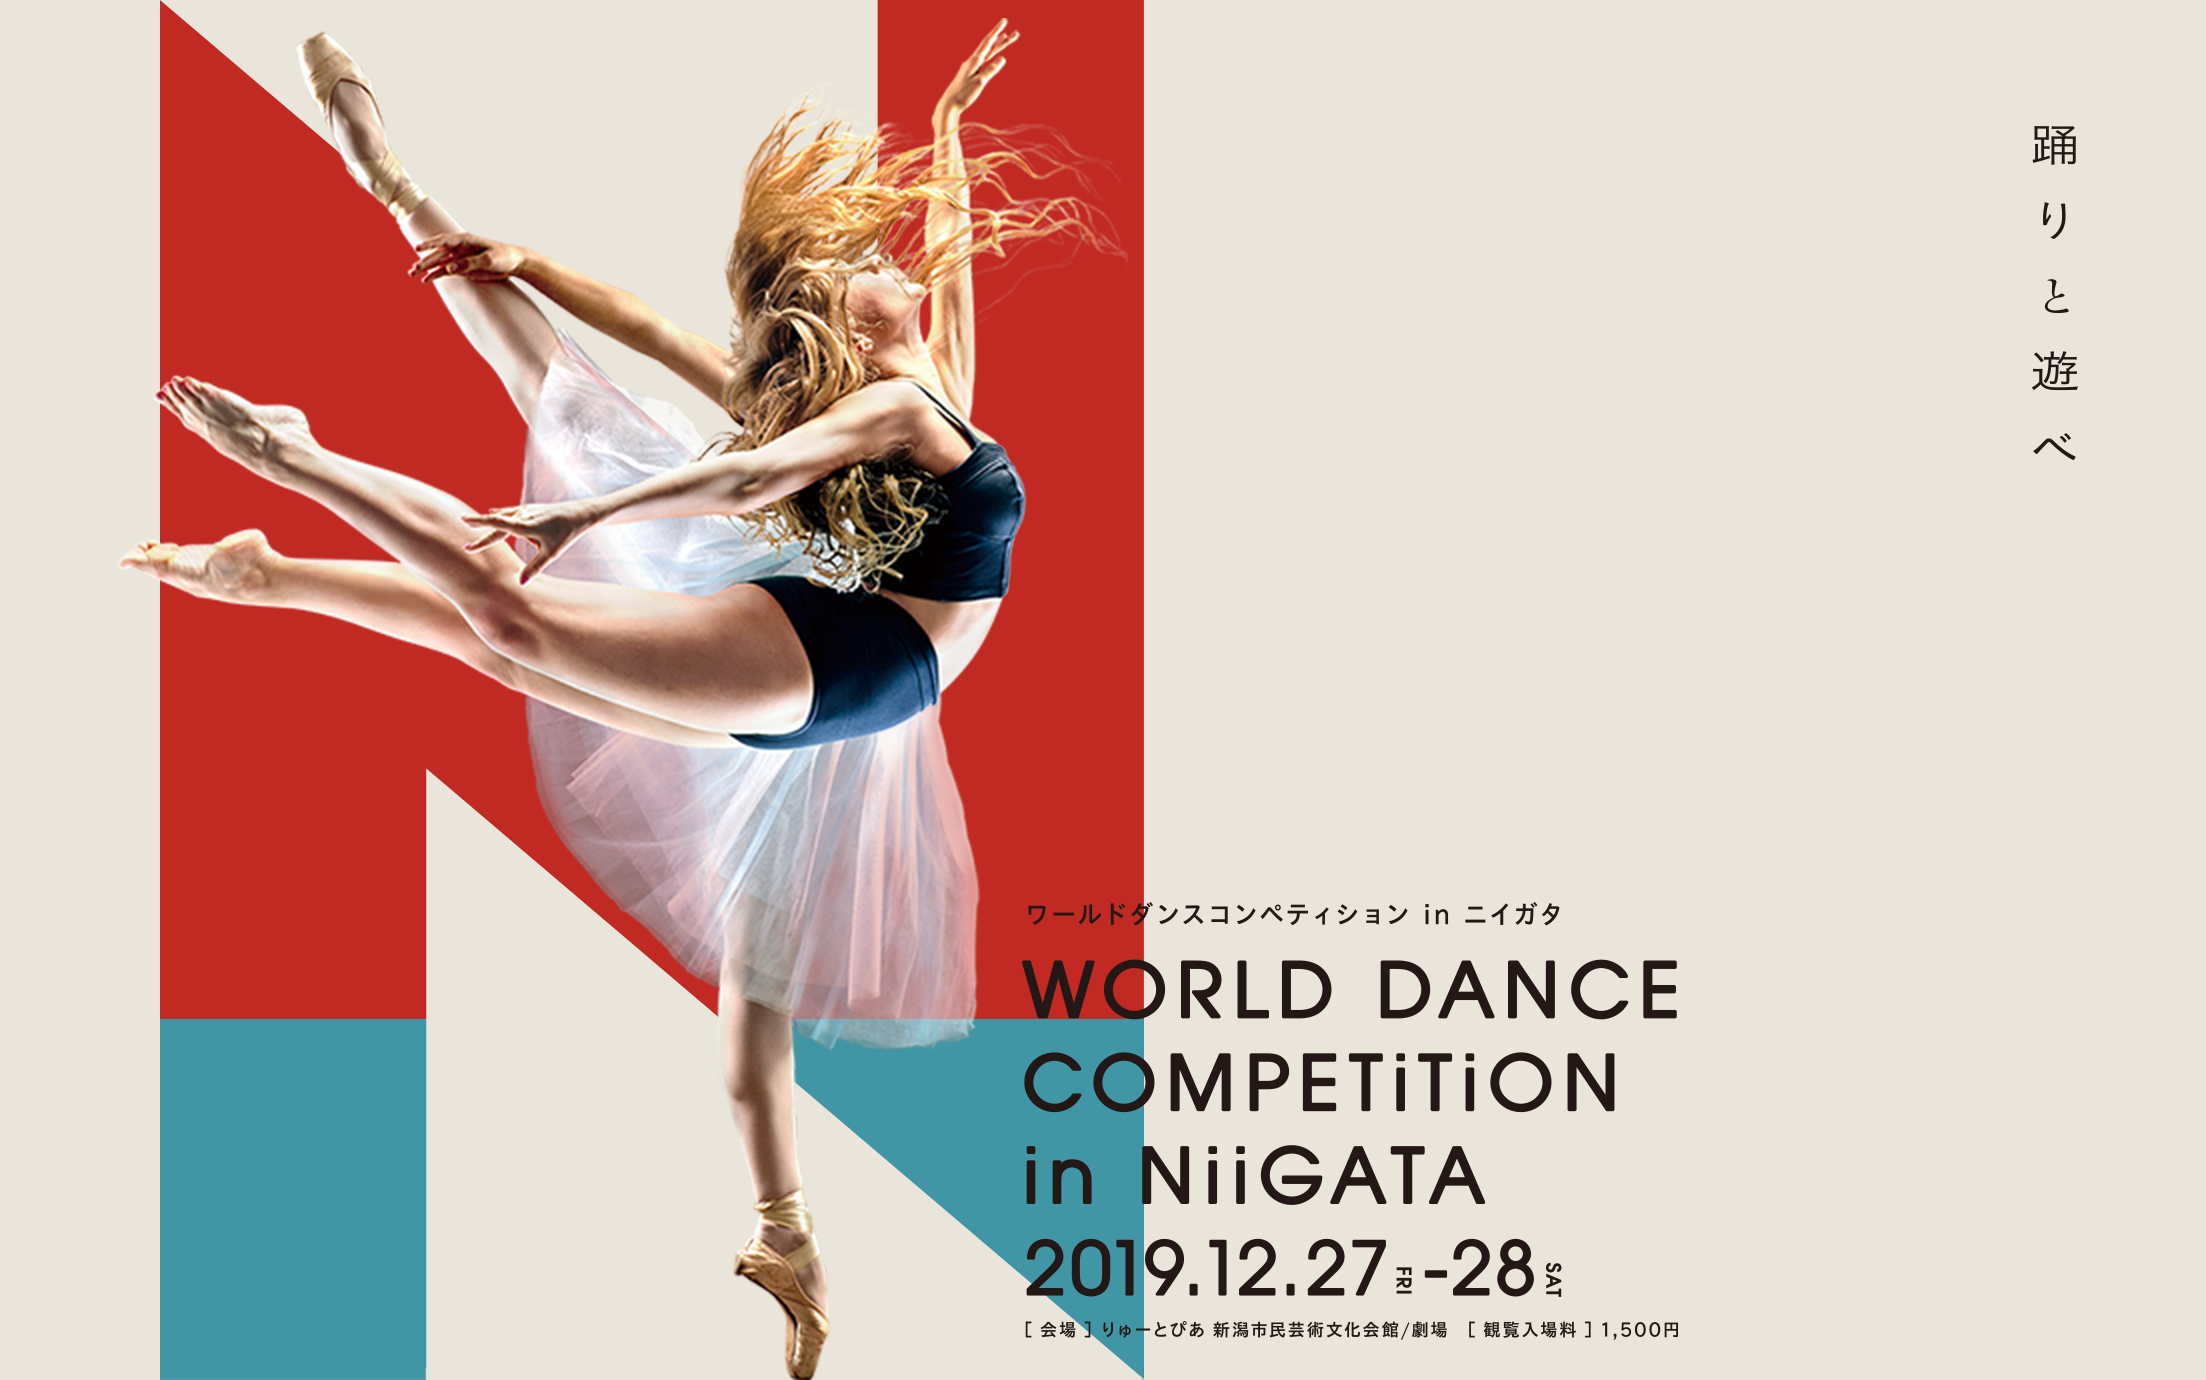 踊りと遊べ WORLD DANCE COMPETITION IN NIIGATA ワールドダンスコペティション in ニイガタ